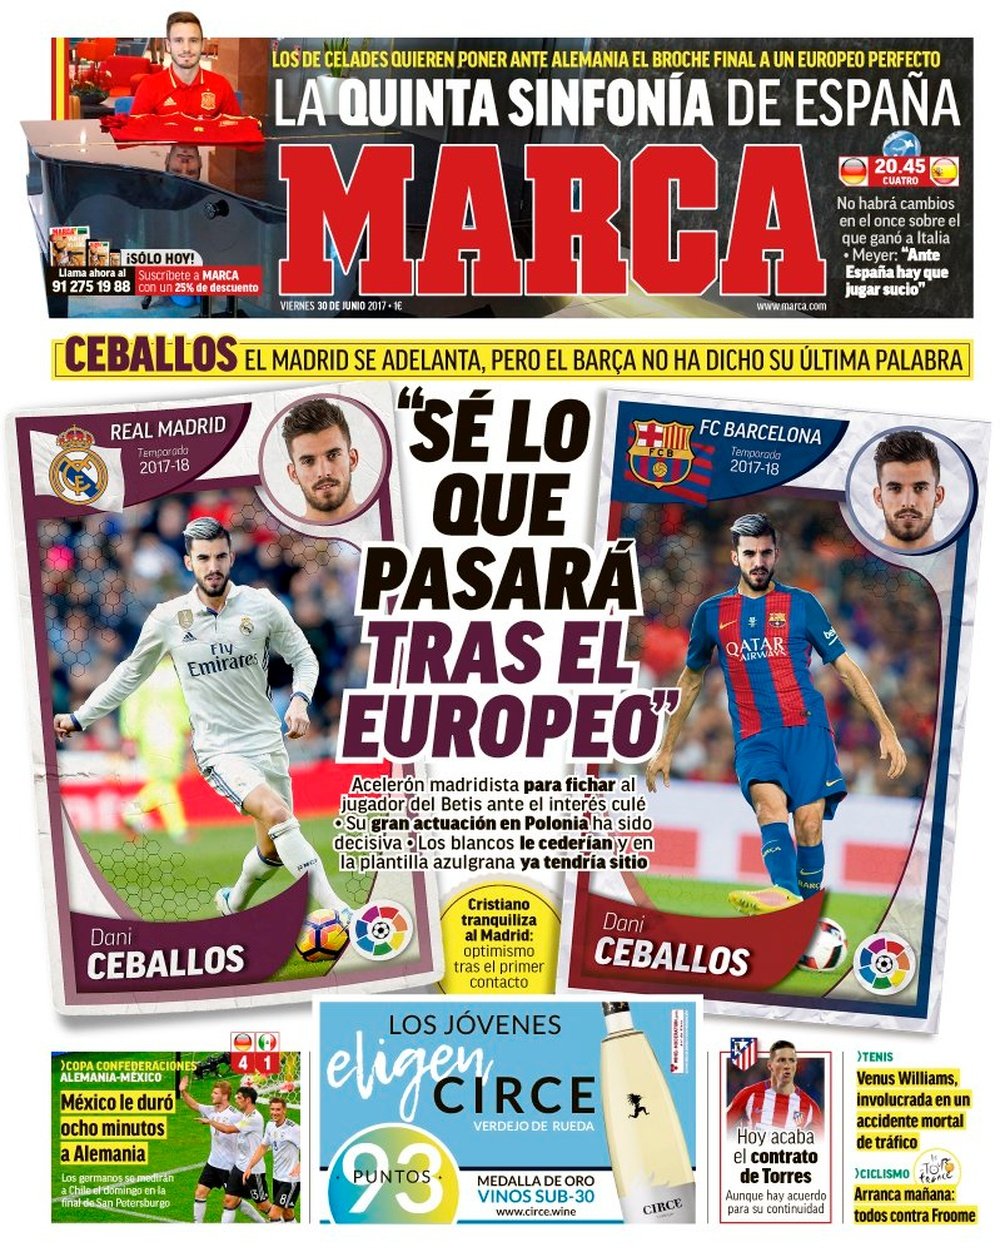 La Une de 'Marca' du 30 juin 2017. Marca